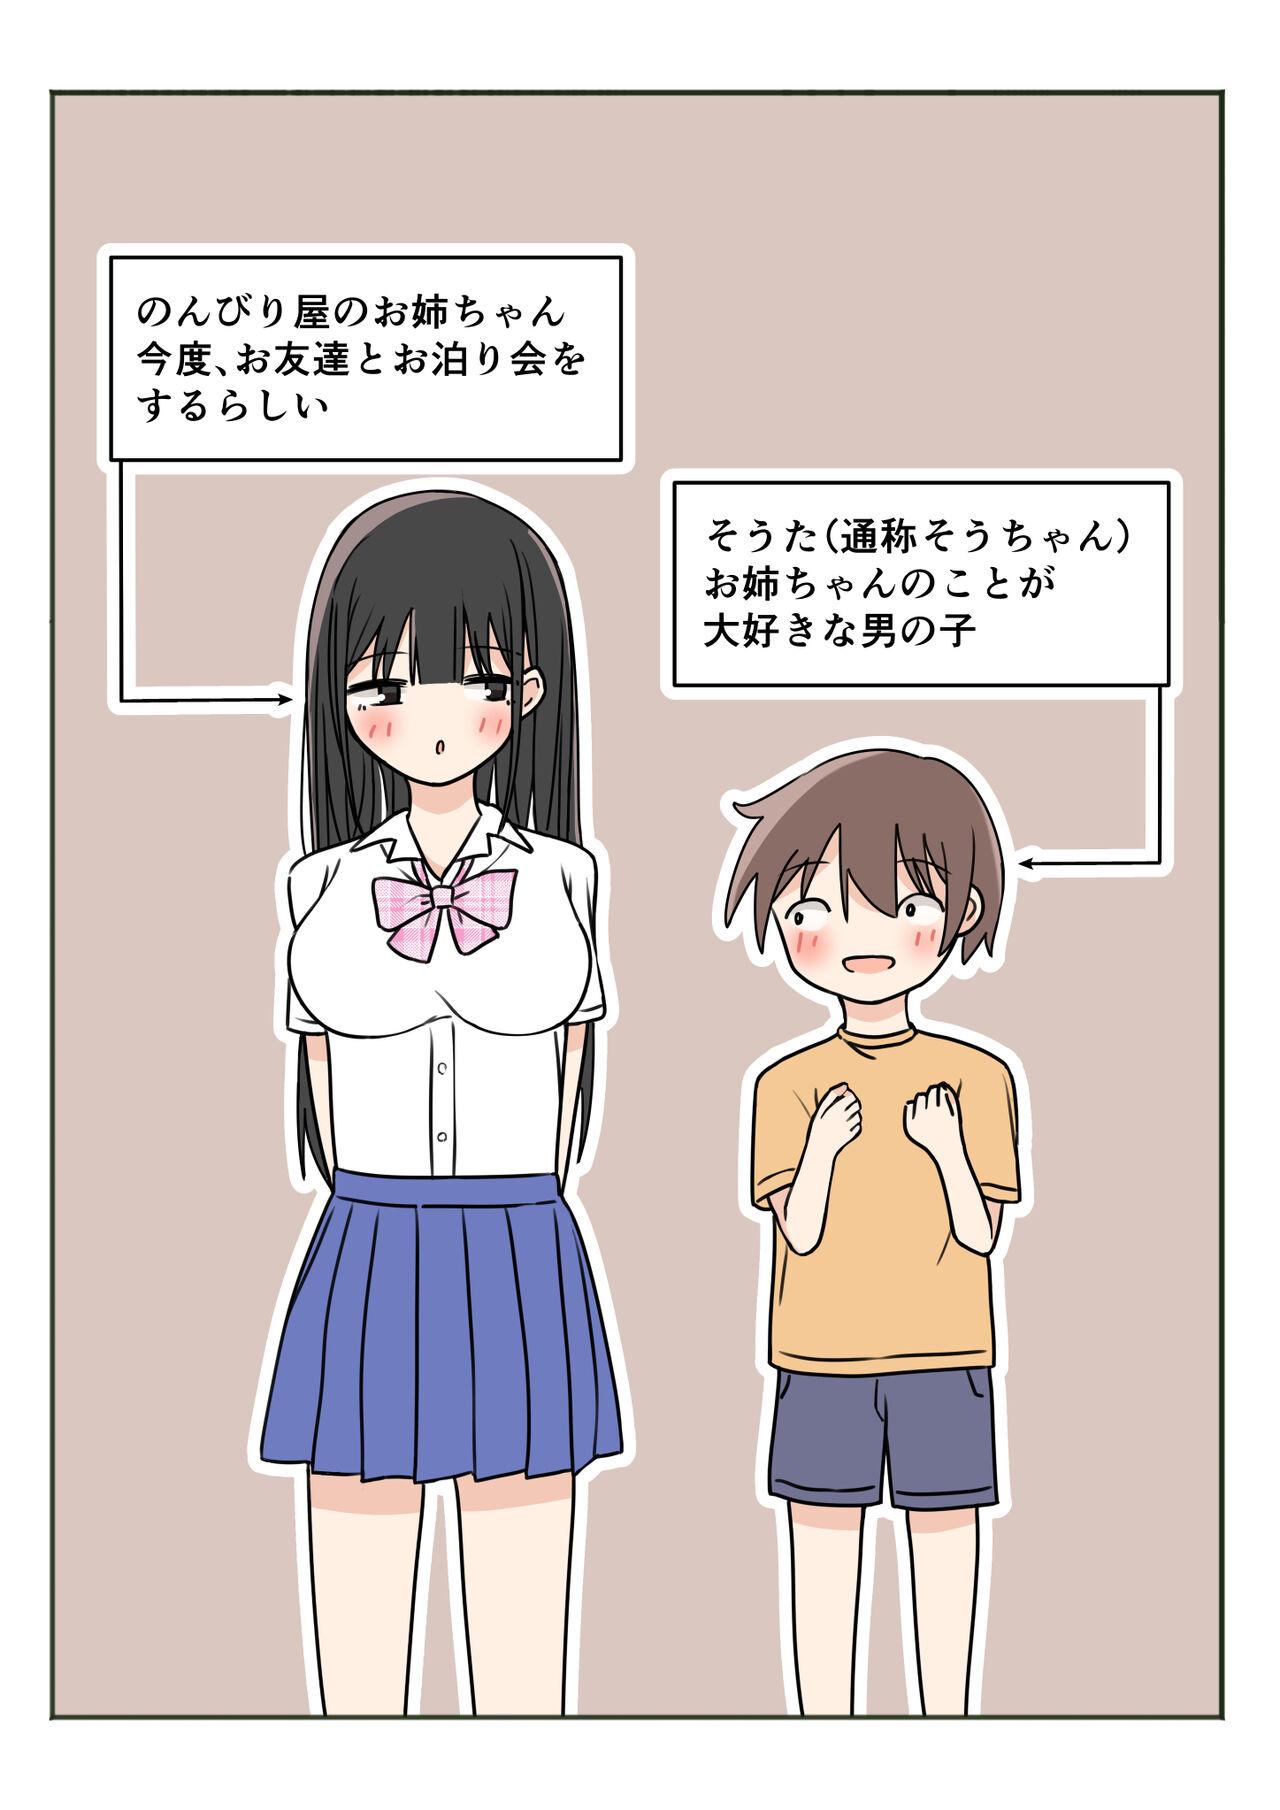 Duro Boku no Onee-chan no Otomodachi to Otomari Ecchi Nudity - Page 2